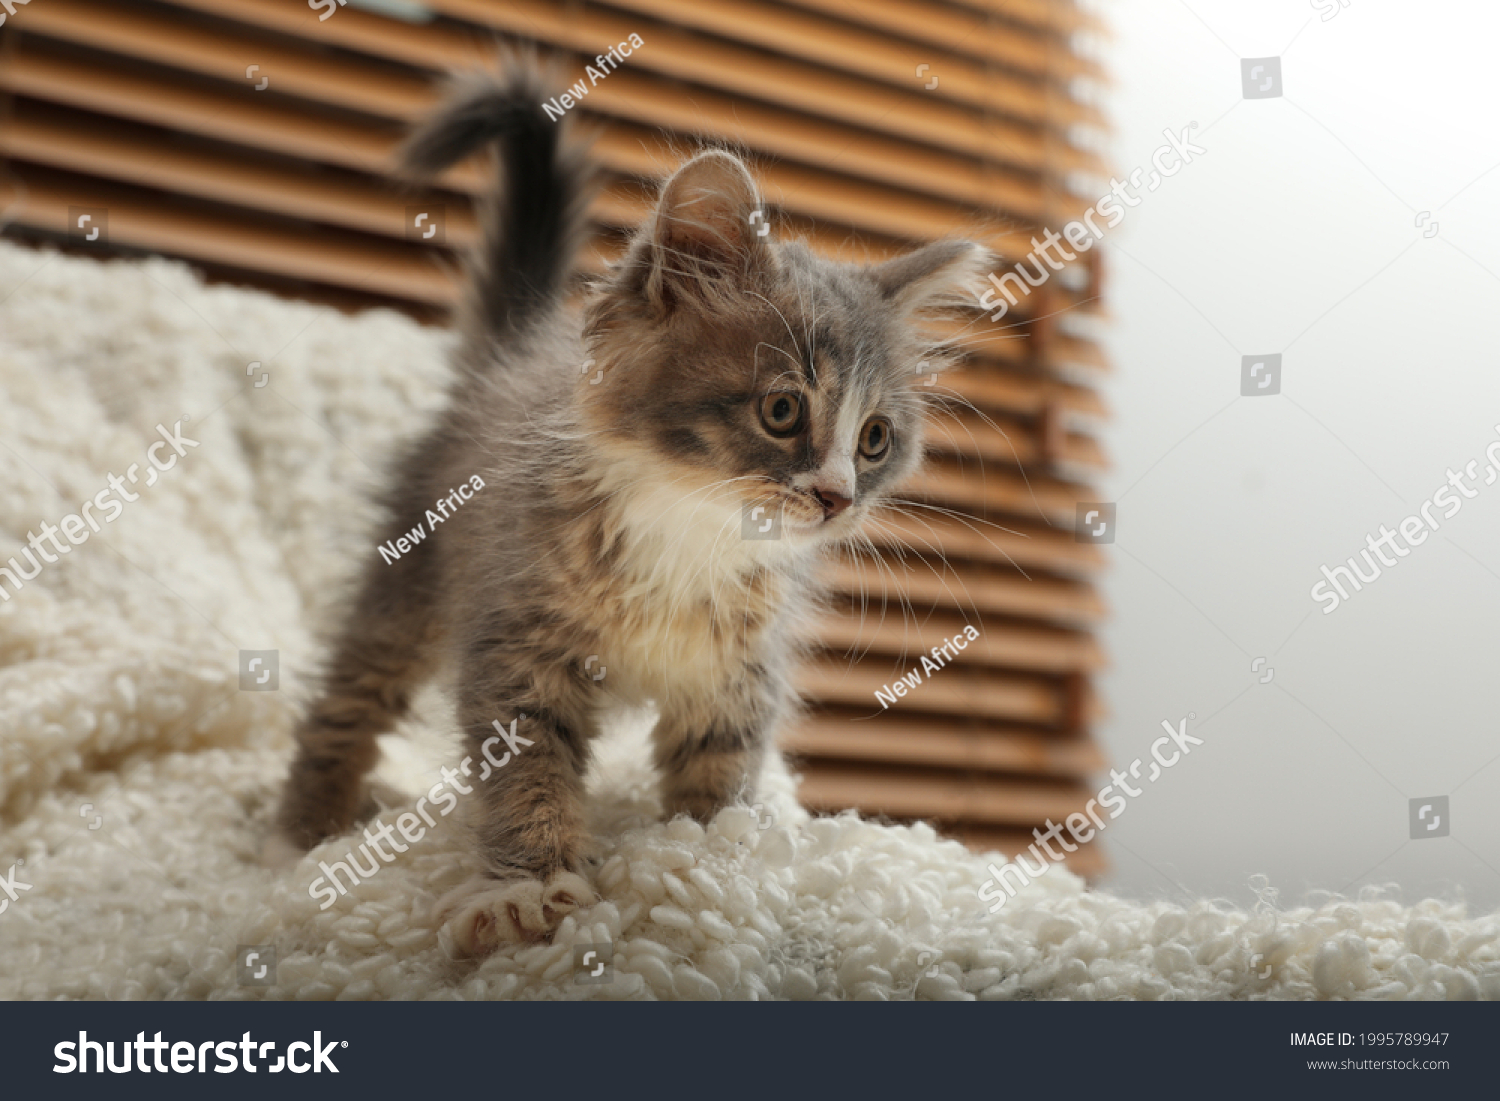 Cute fluffy kitten on white blanket indoors #1995789947